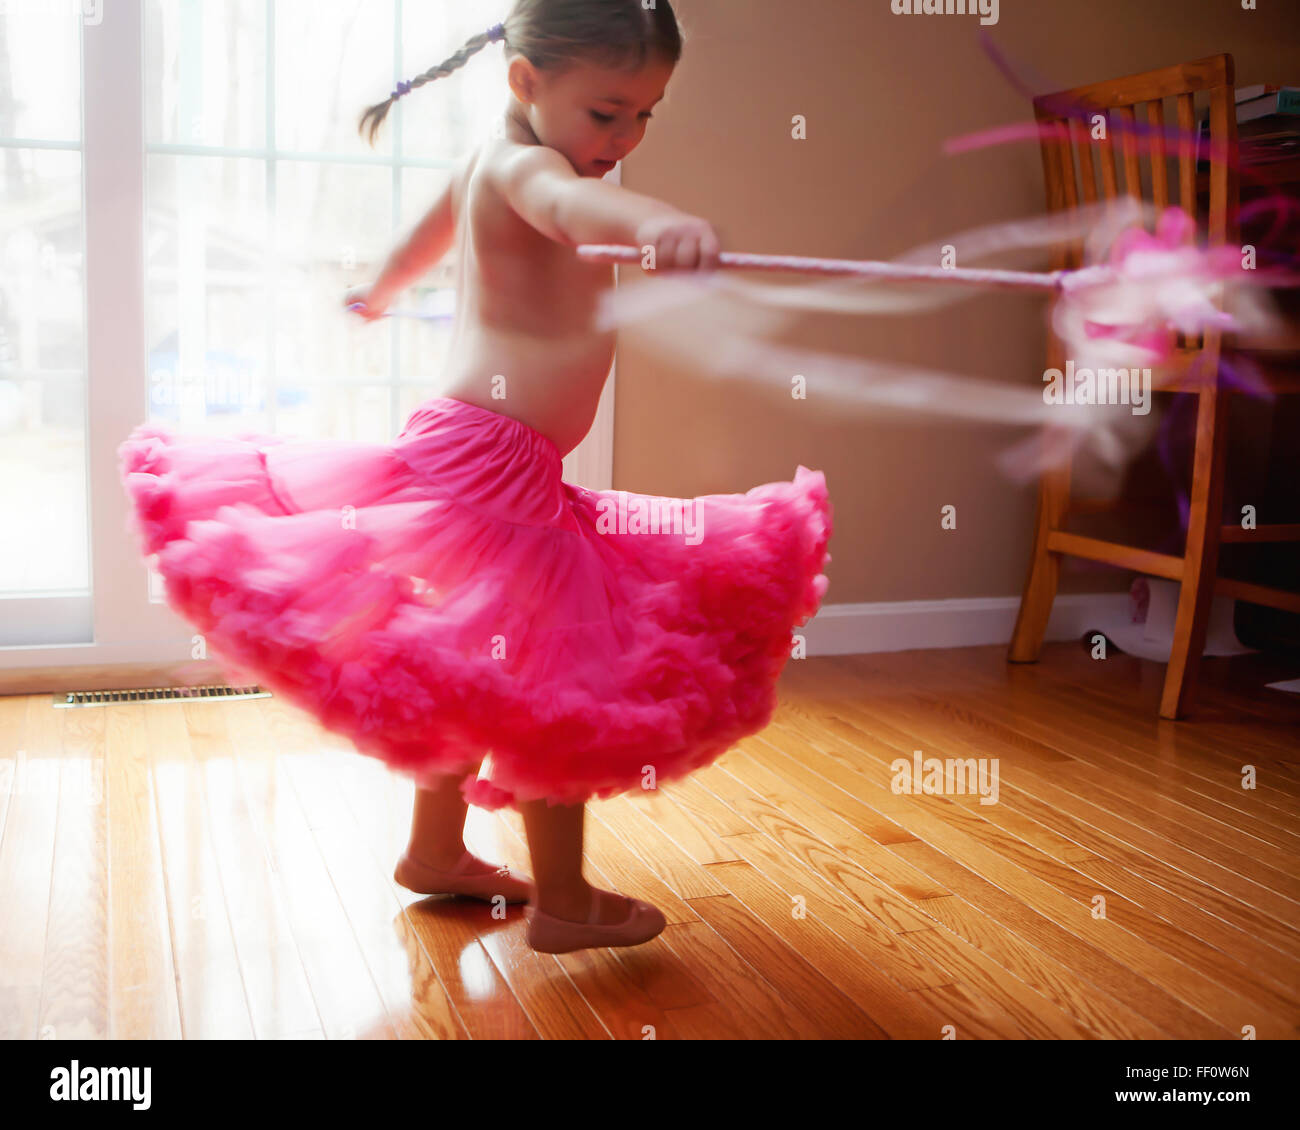 Caucasian girl twirling in skirt Stock Photo